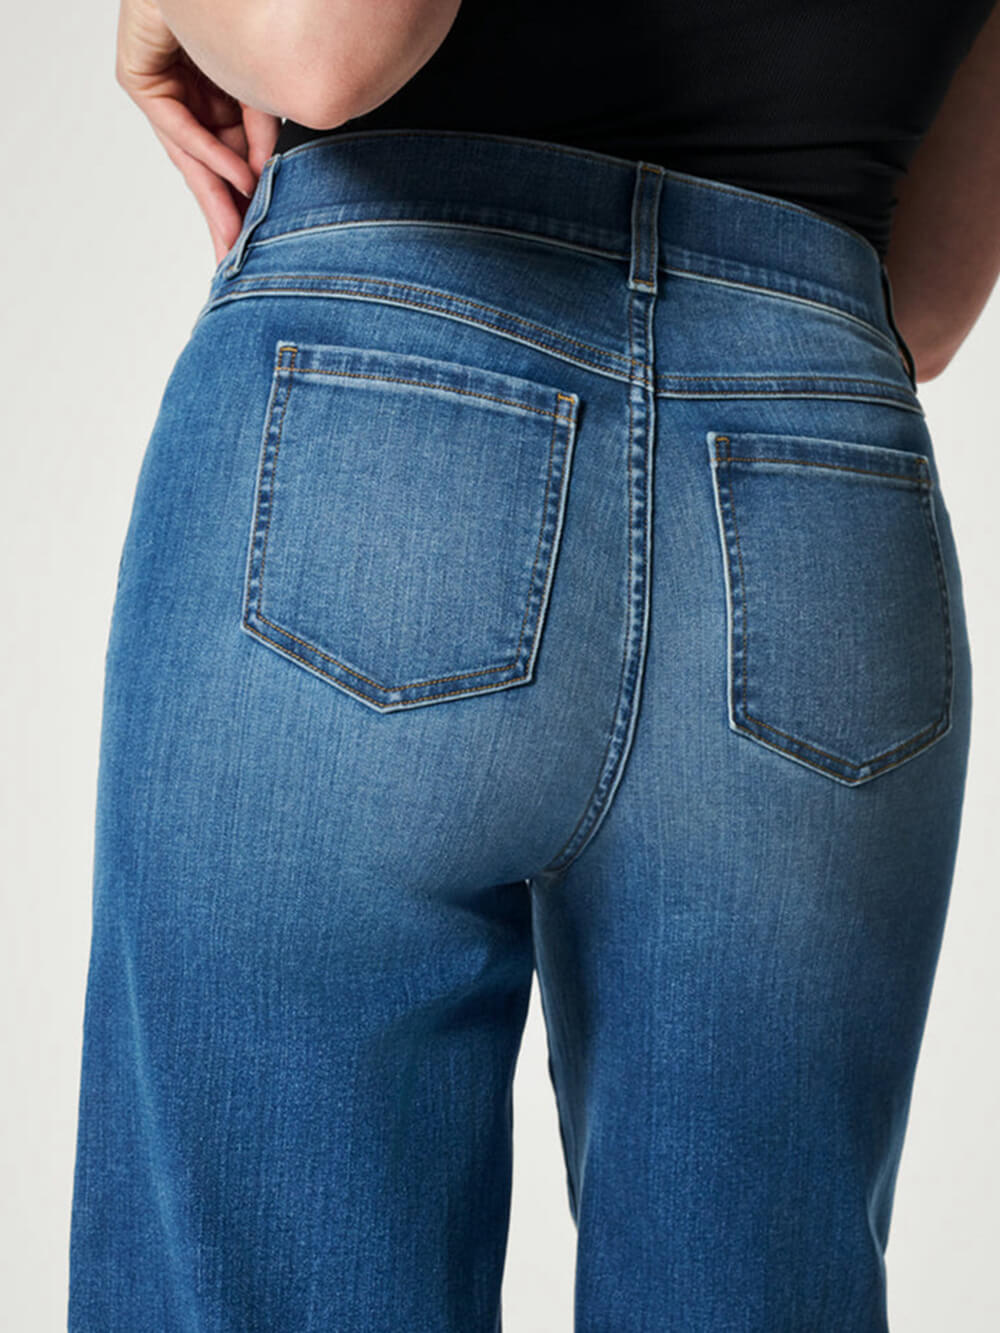 Mellomhøyde jeans med brede ben